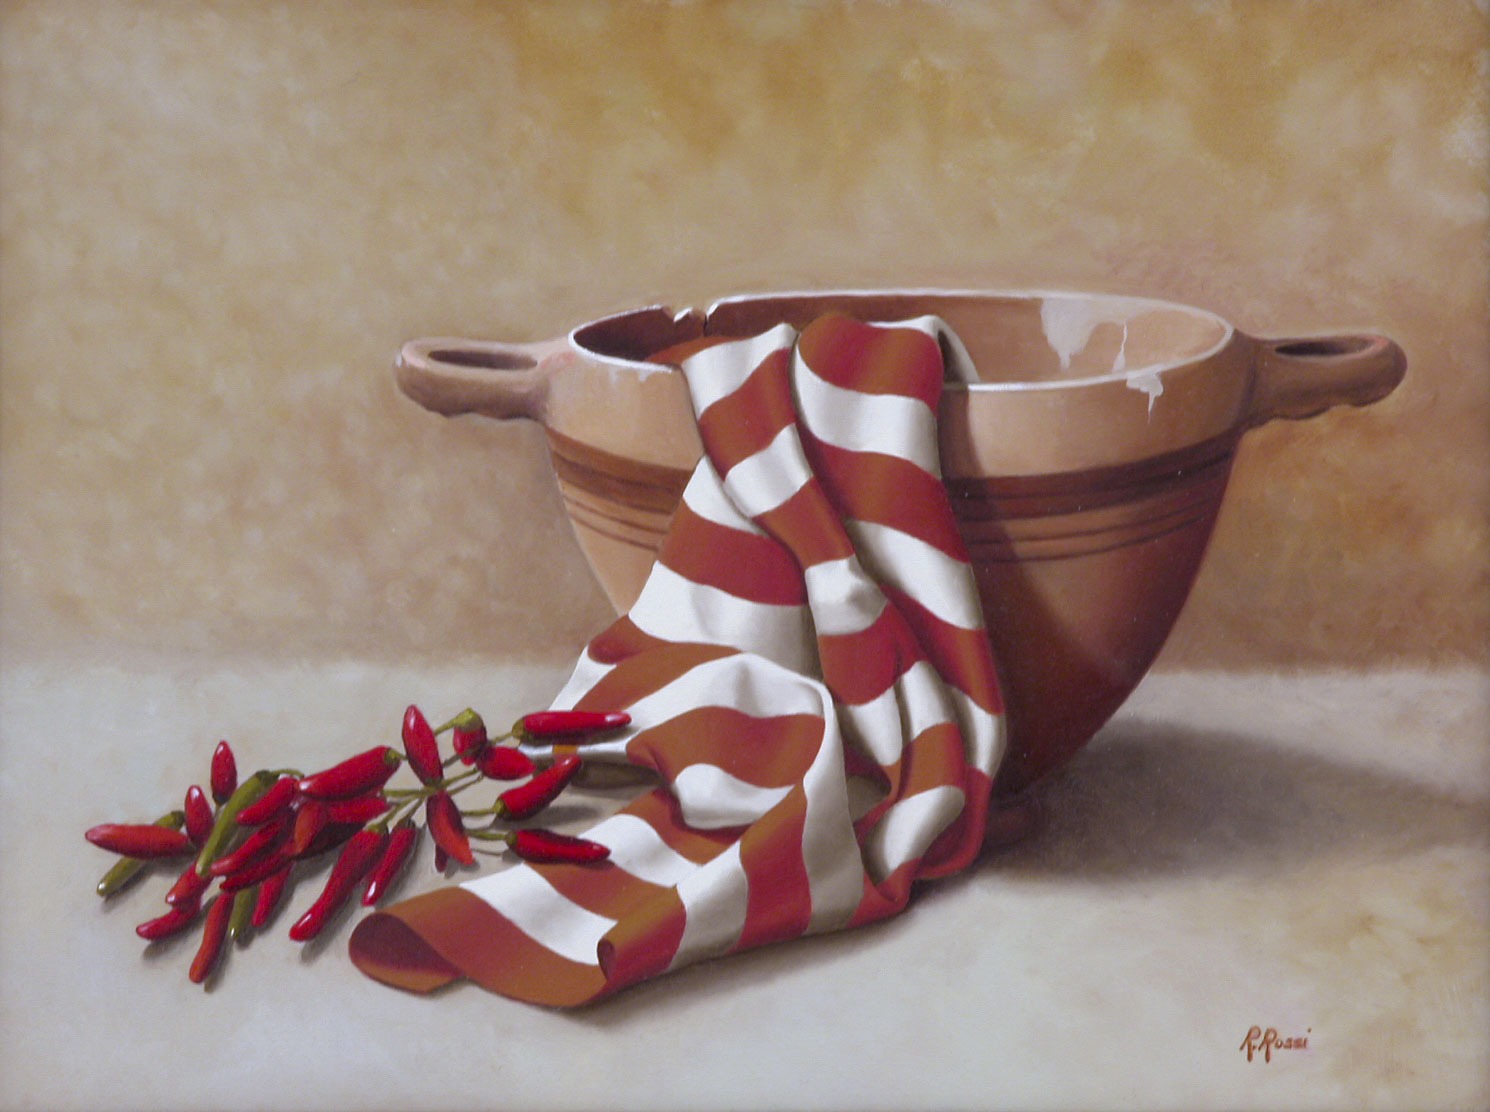 2008 roberta rossi – Composizione con skyphos e peperoncini – olio su tela – 30 x 40